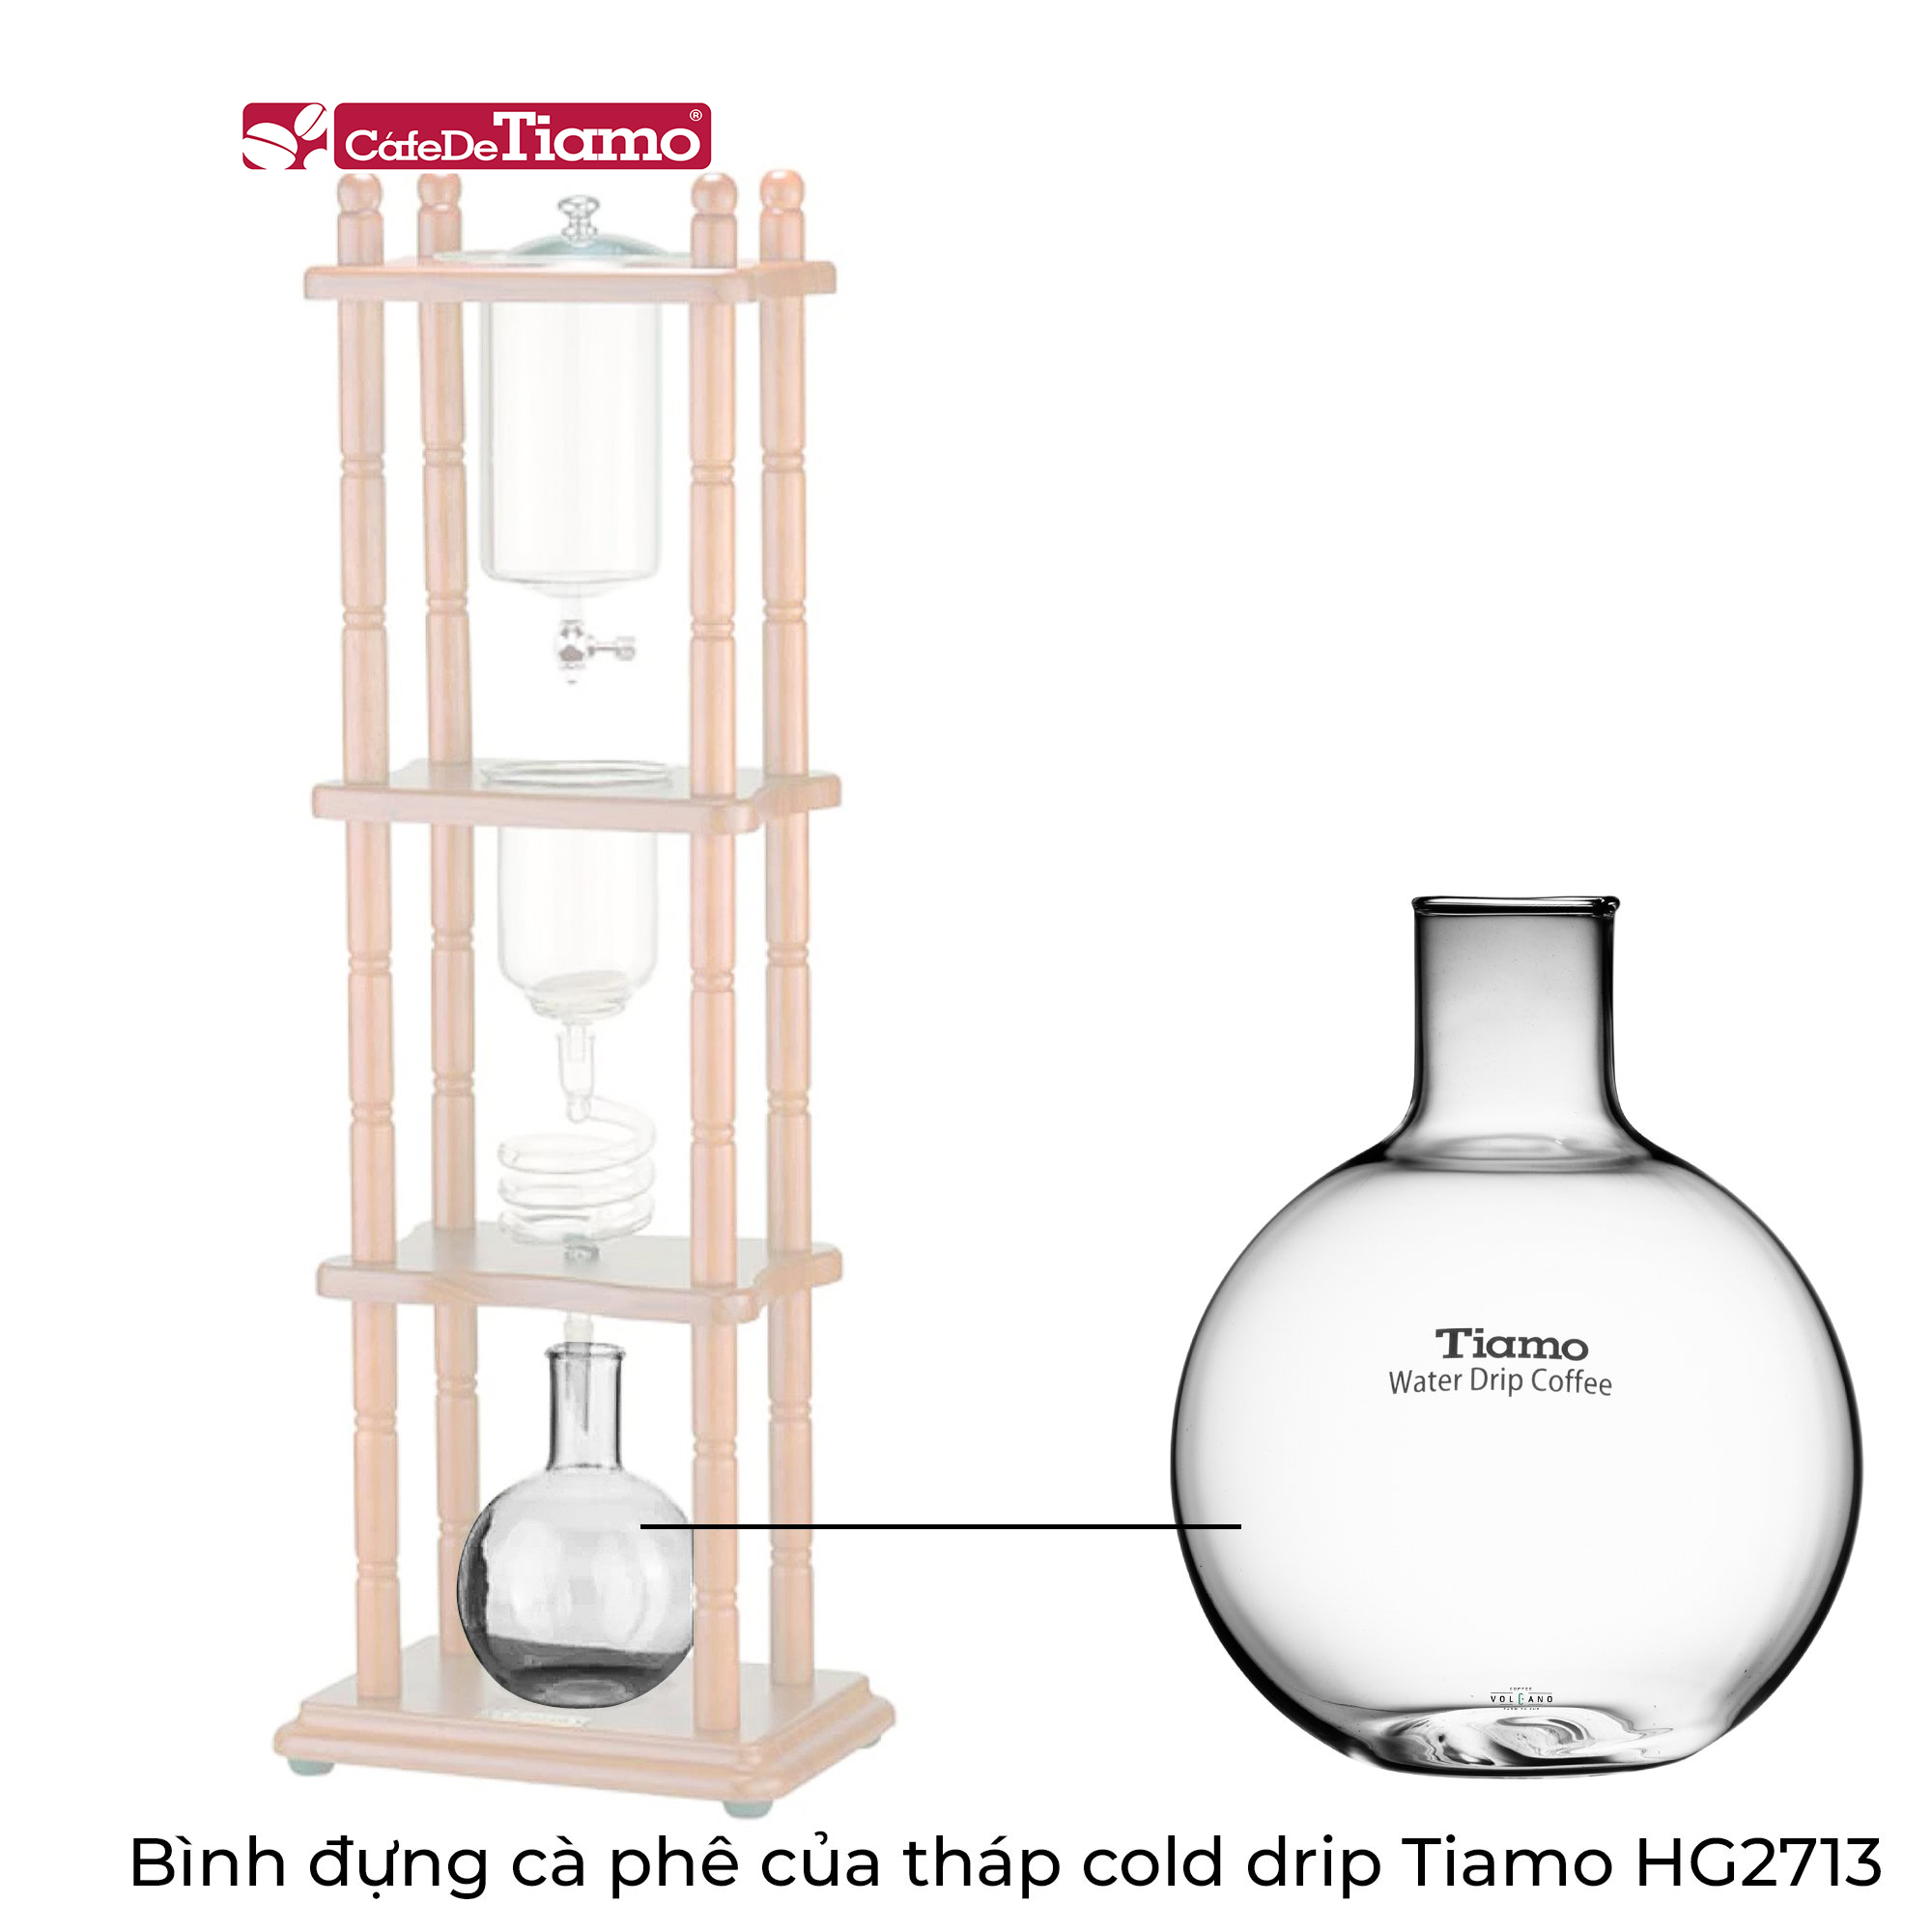 Bình đựng cà phê của tháp Cold Drip Tiamo HG2713